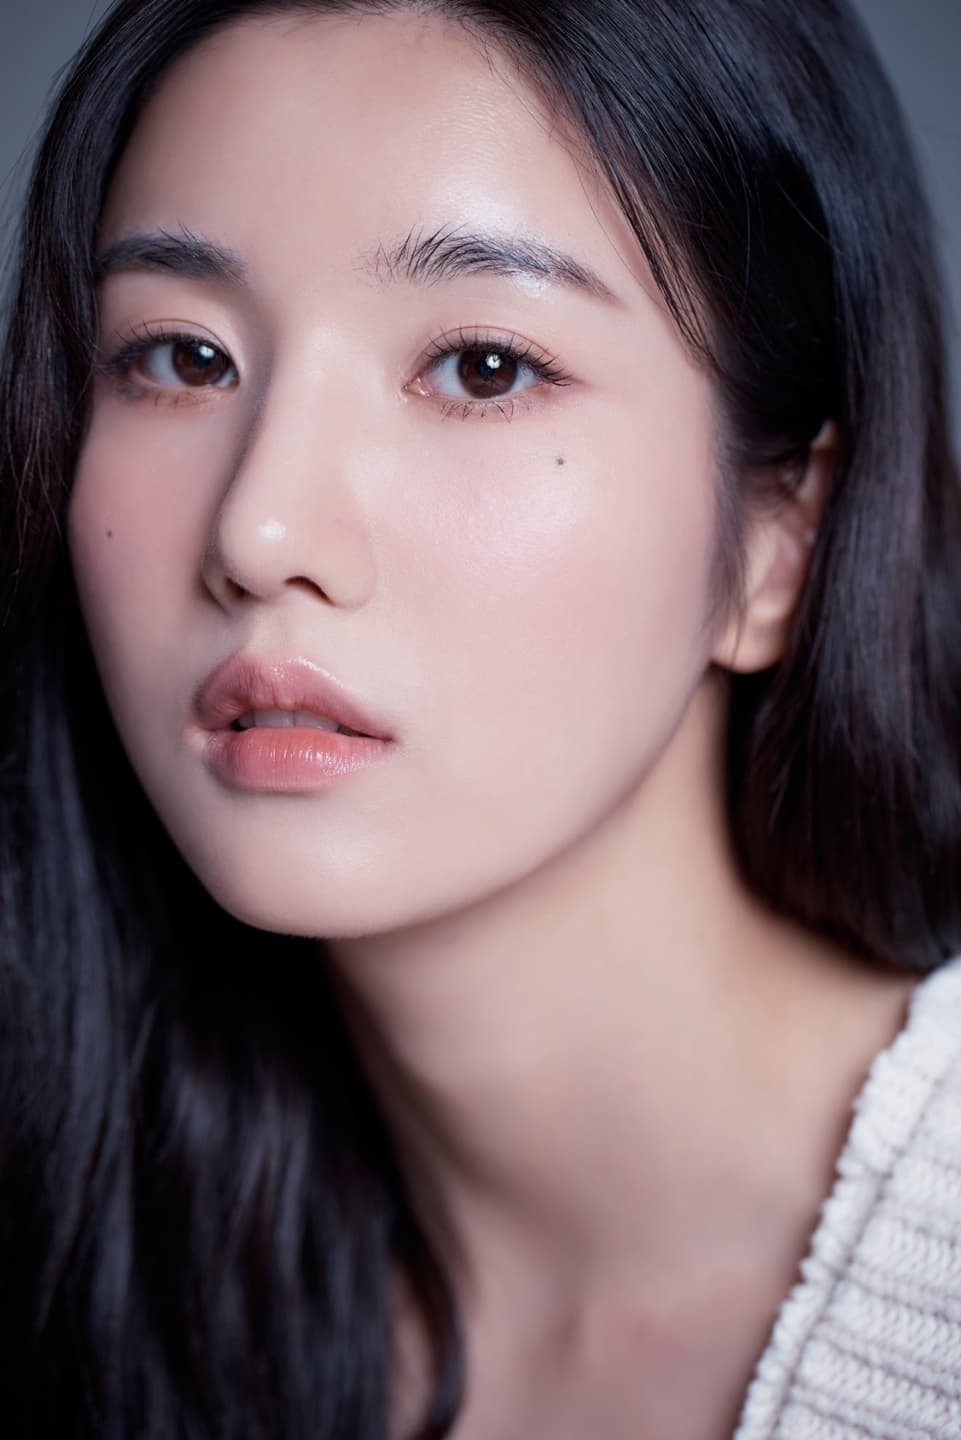 Kwon Eun-bi